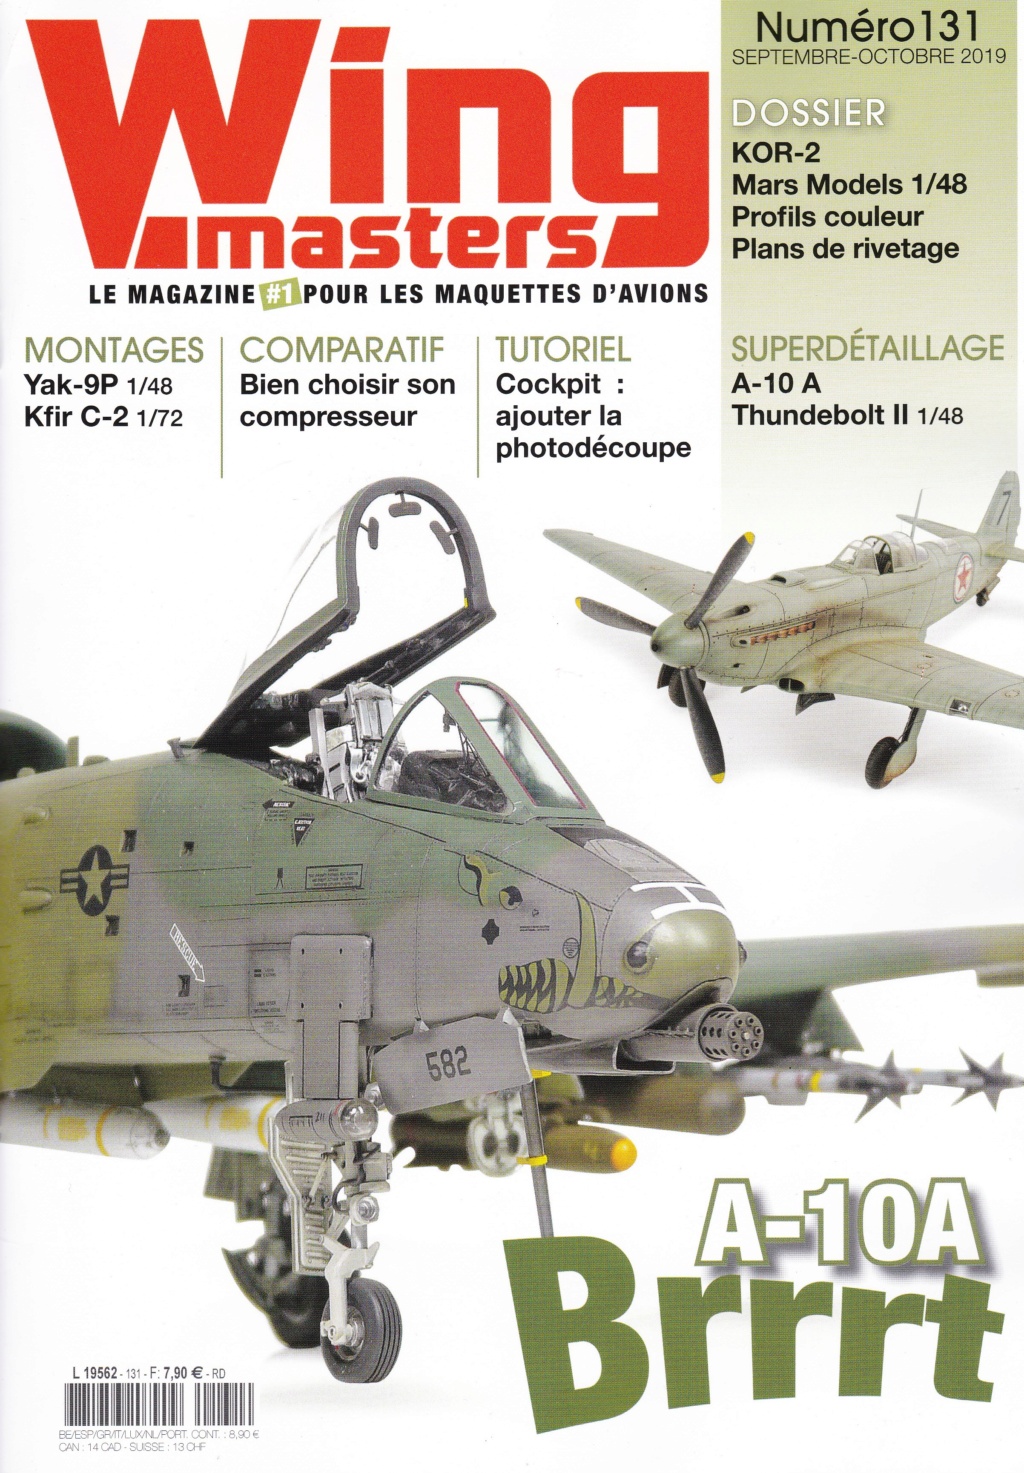 Wing Masters n°131 - Septembre/octobre 219 Wm10